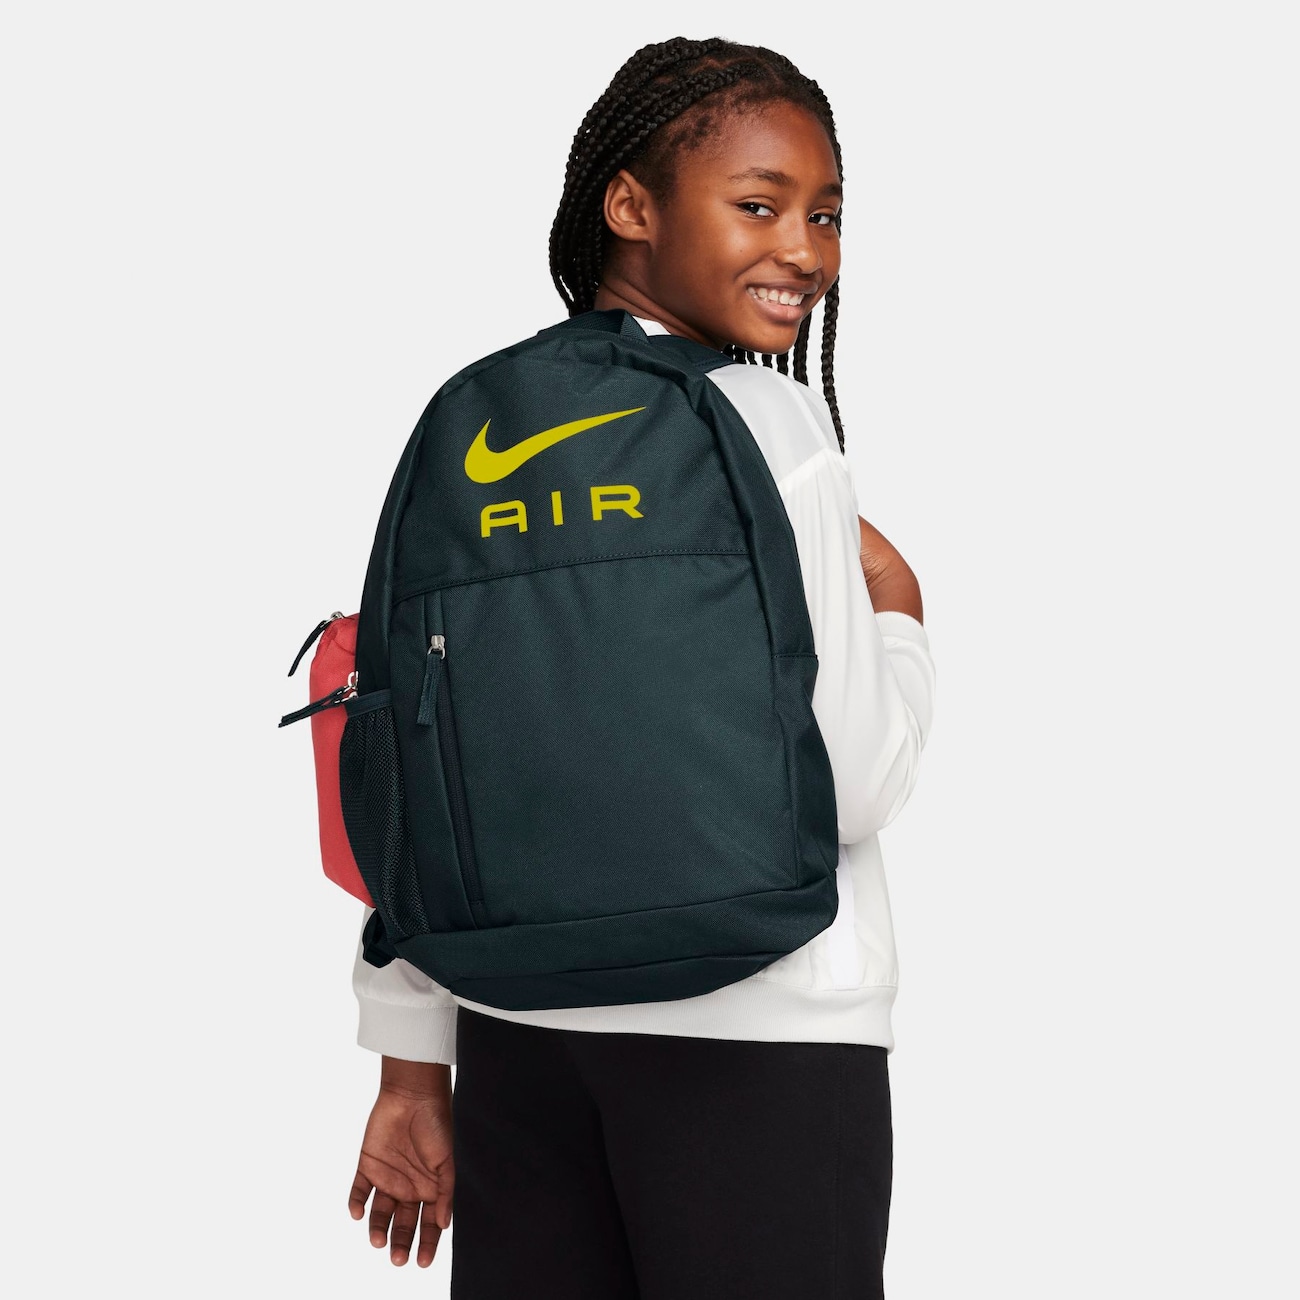 Nike-rygsæk til børn (20 liter) - grøn